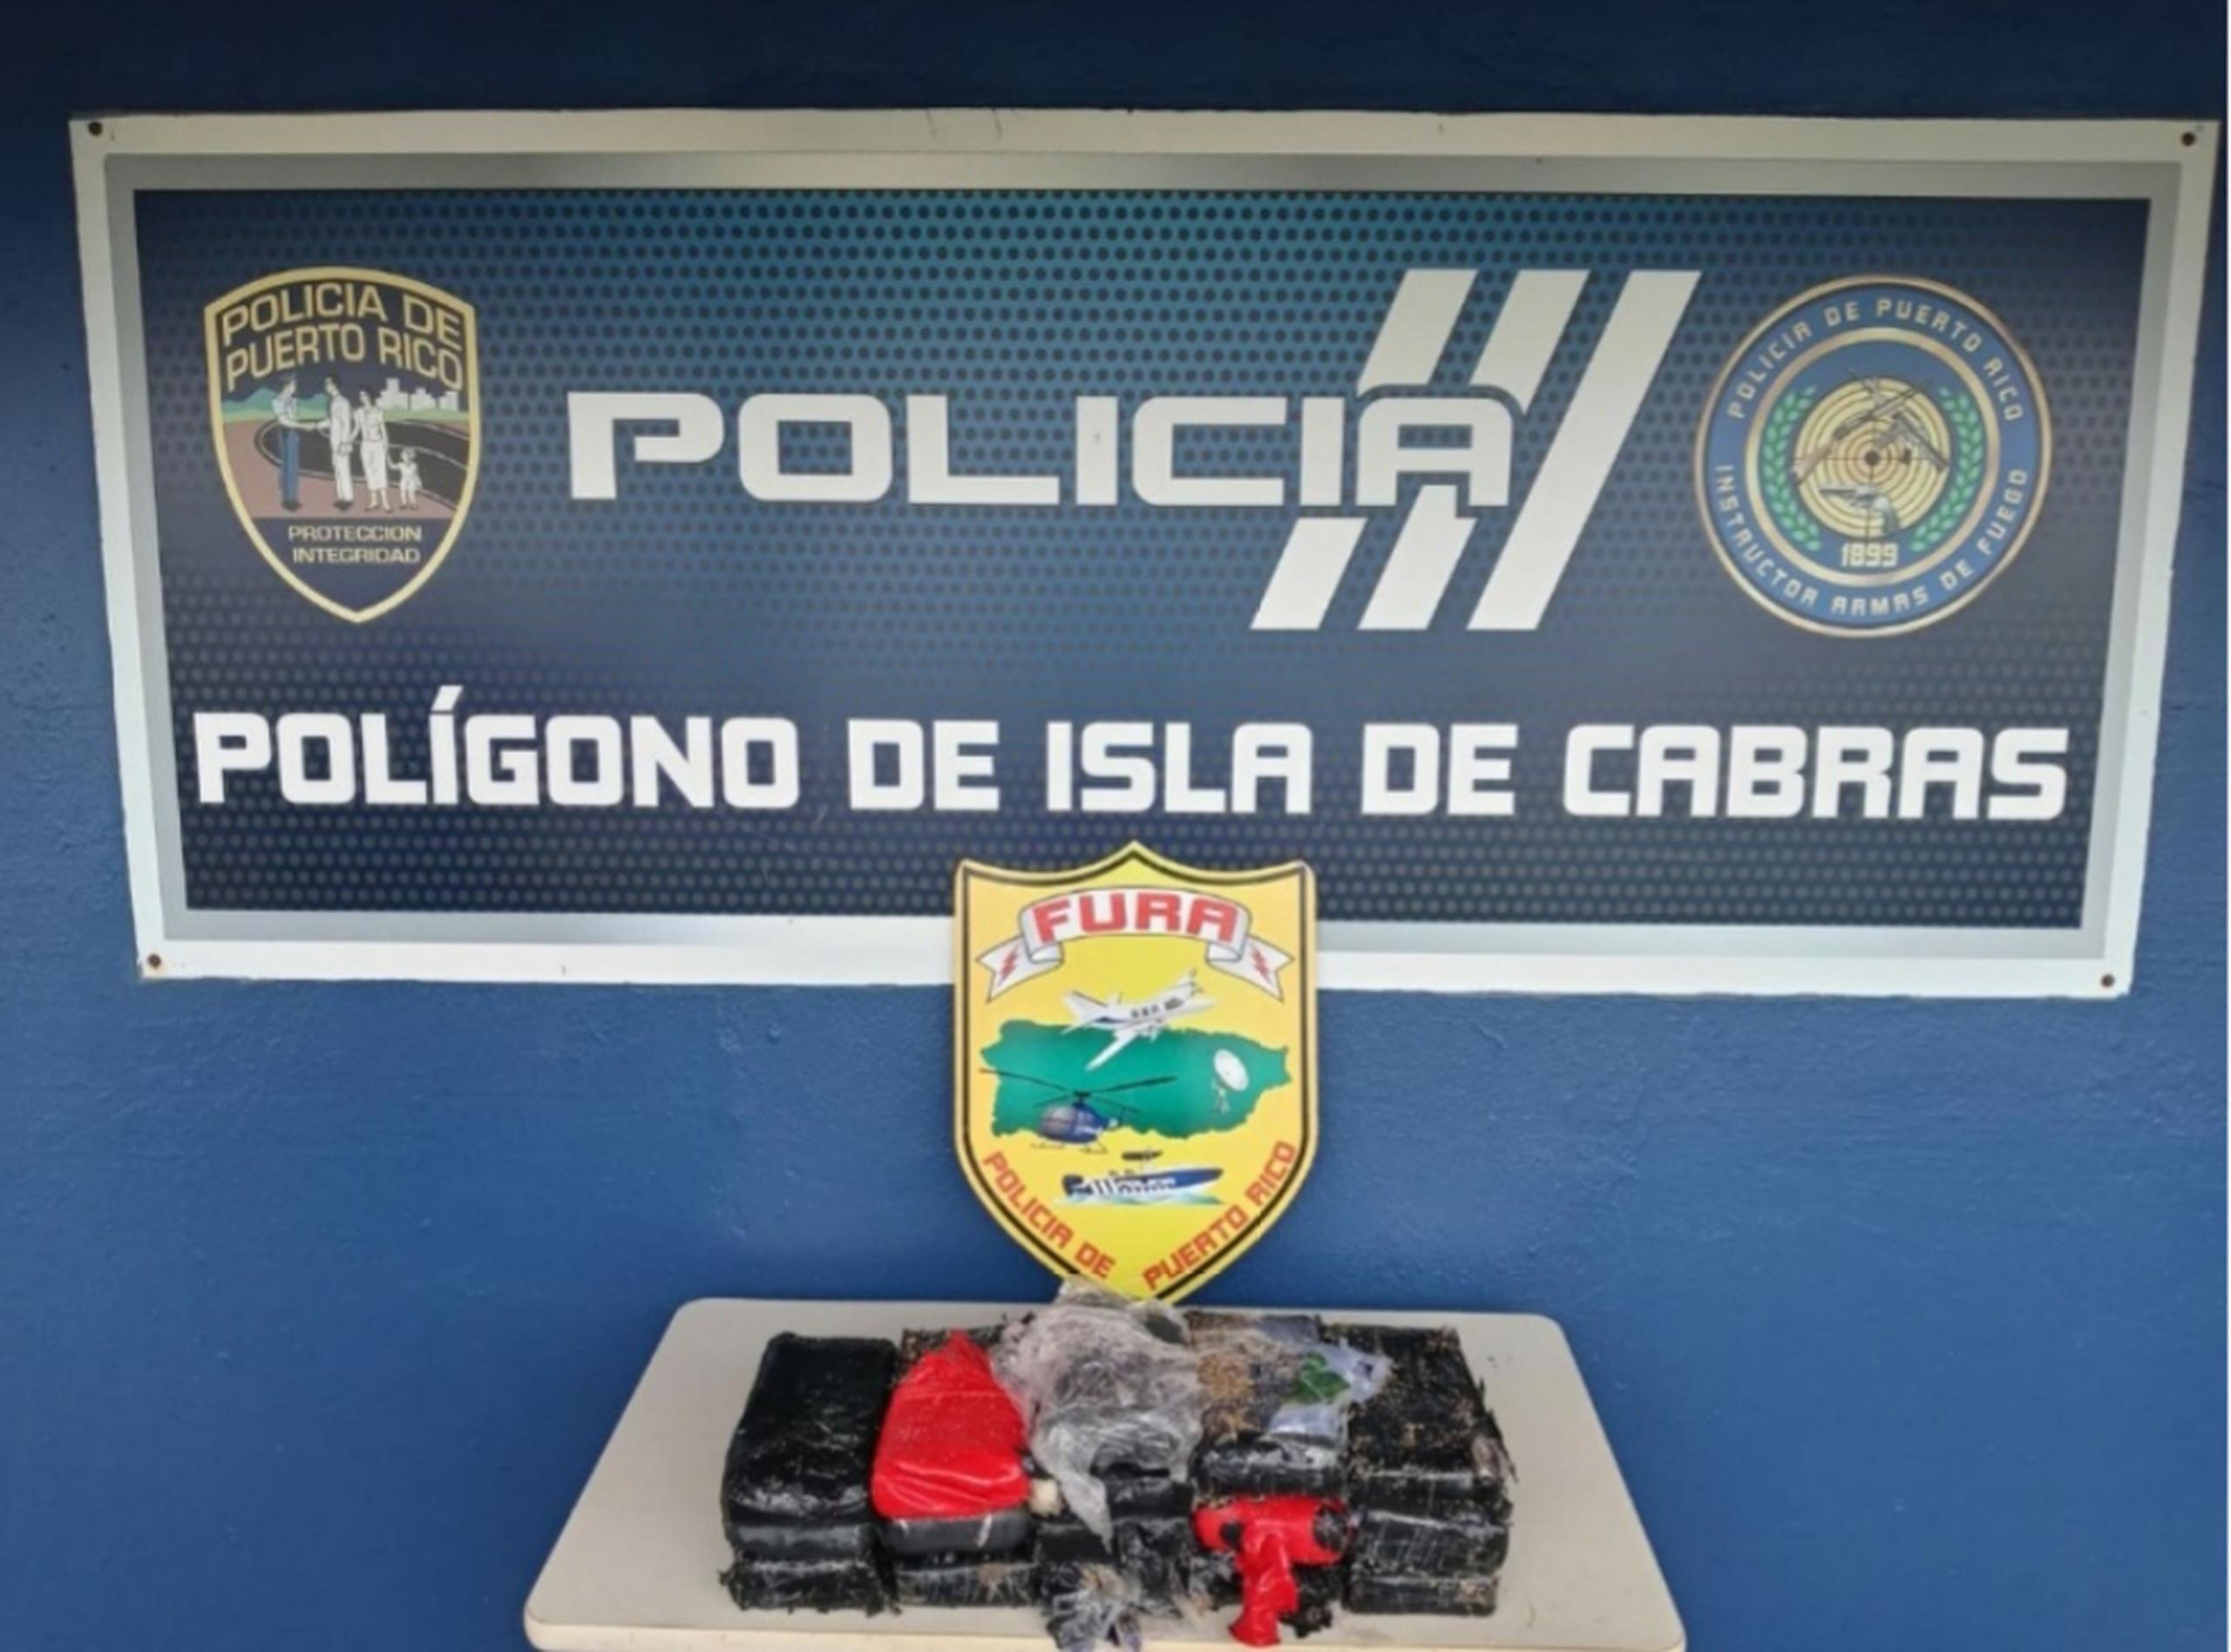 El personal de vigilancia encontró los 15 bloques de cocaína detrás del polígono de tiro del Negociado de la Policía durante una ronda por el lugar.